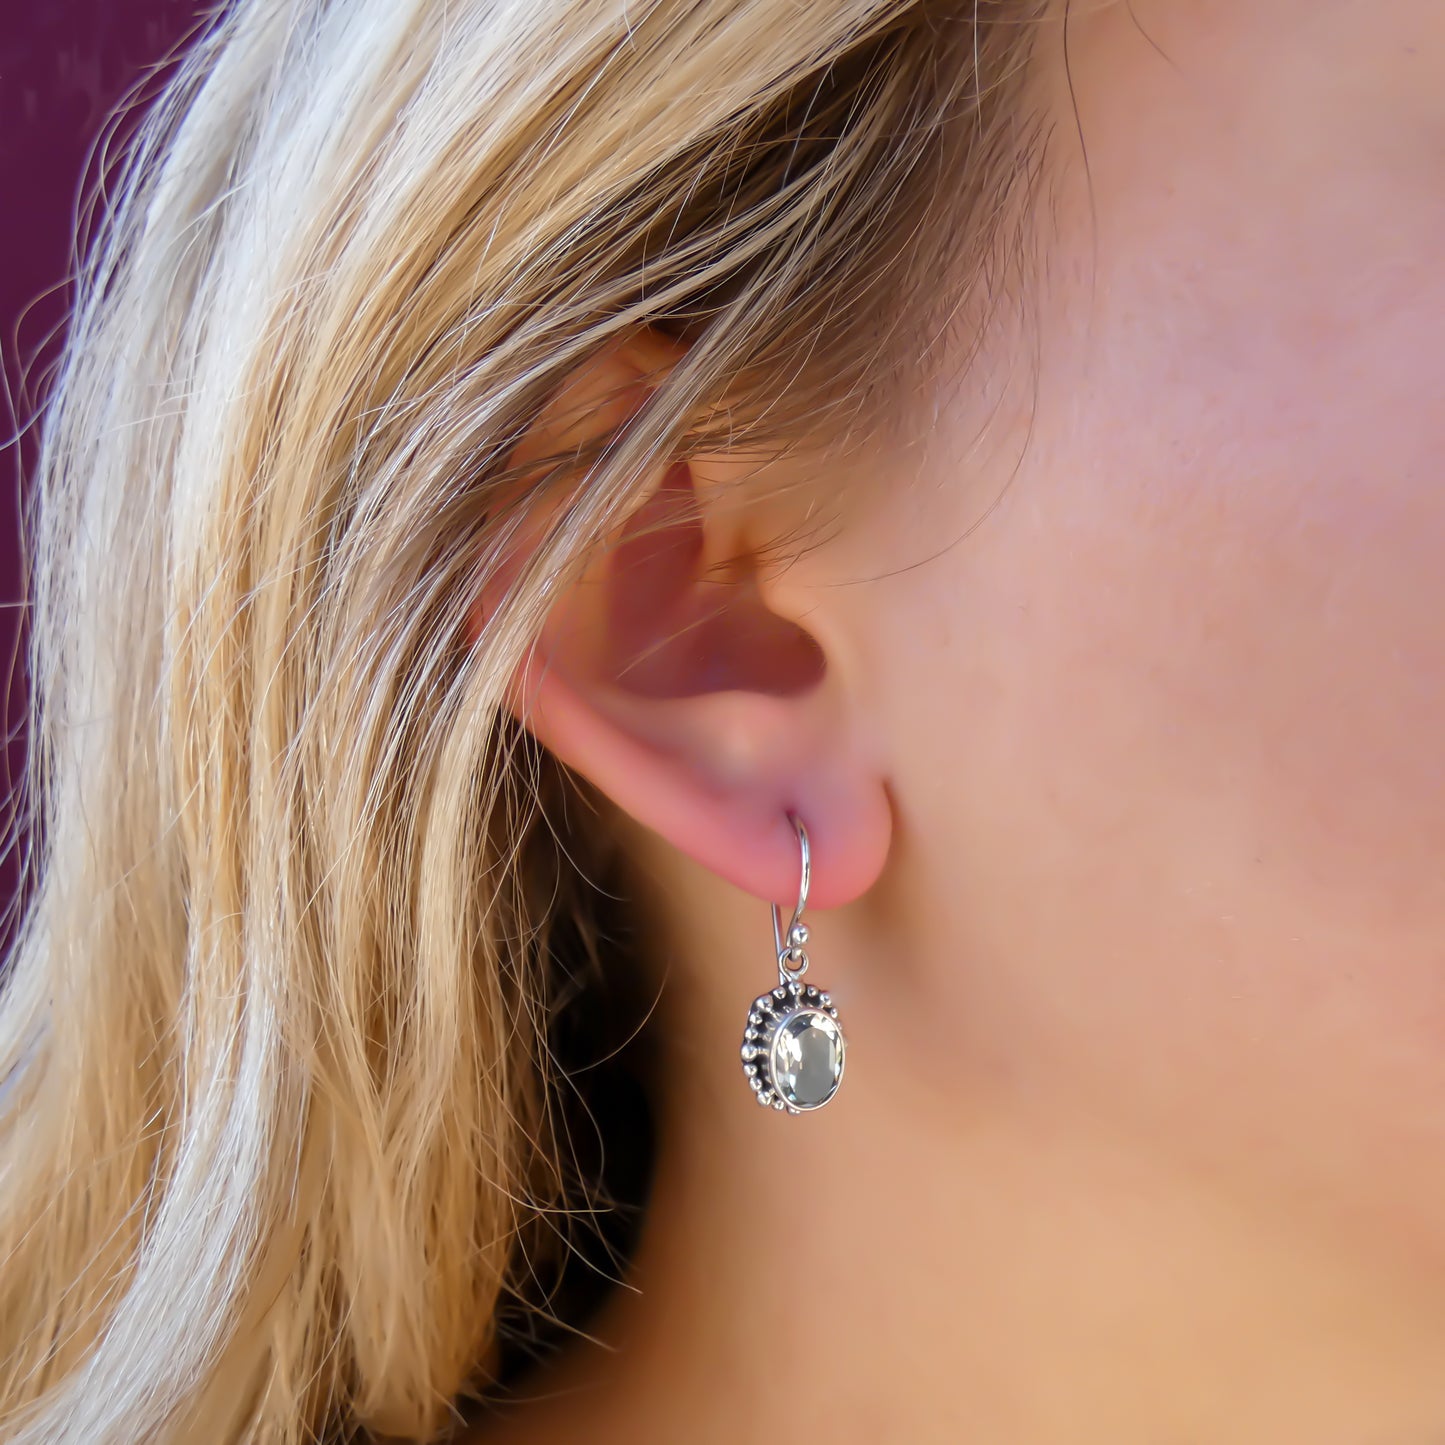 Woman wearing silver earrings with oval green amethyst gemstones.